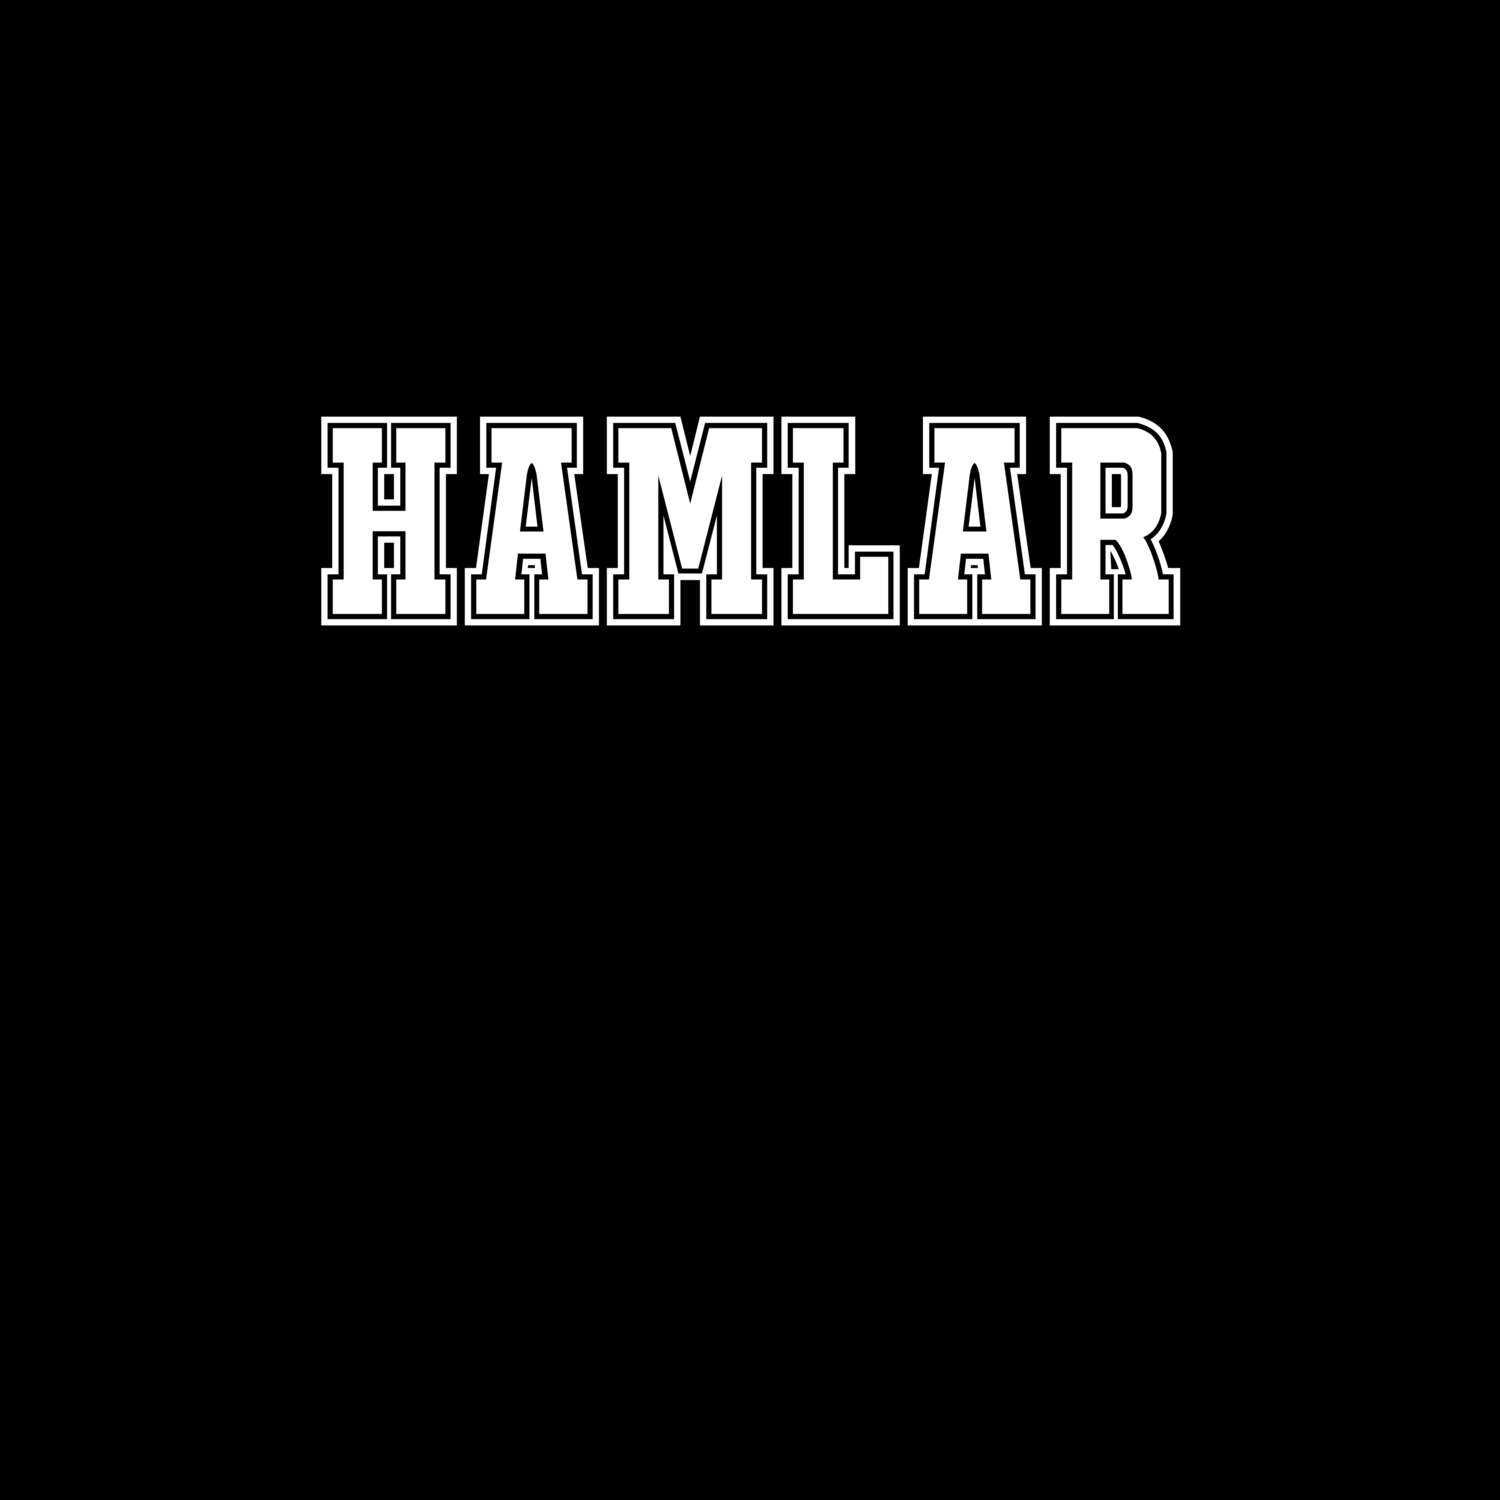 Hamlar T-Shirt »Classic«